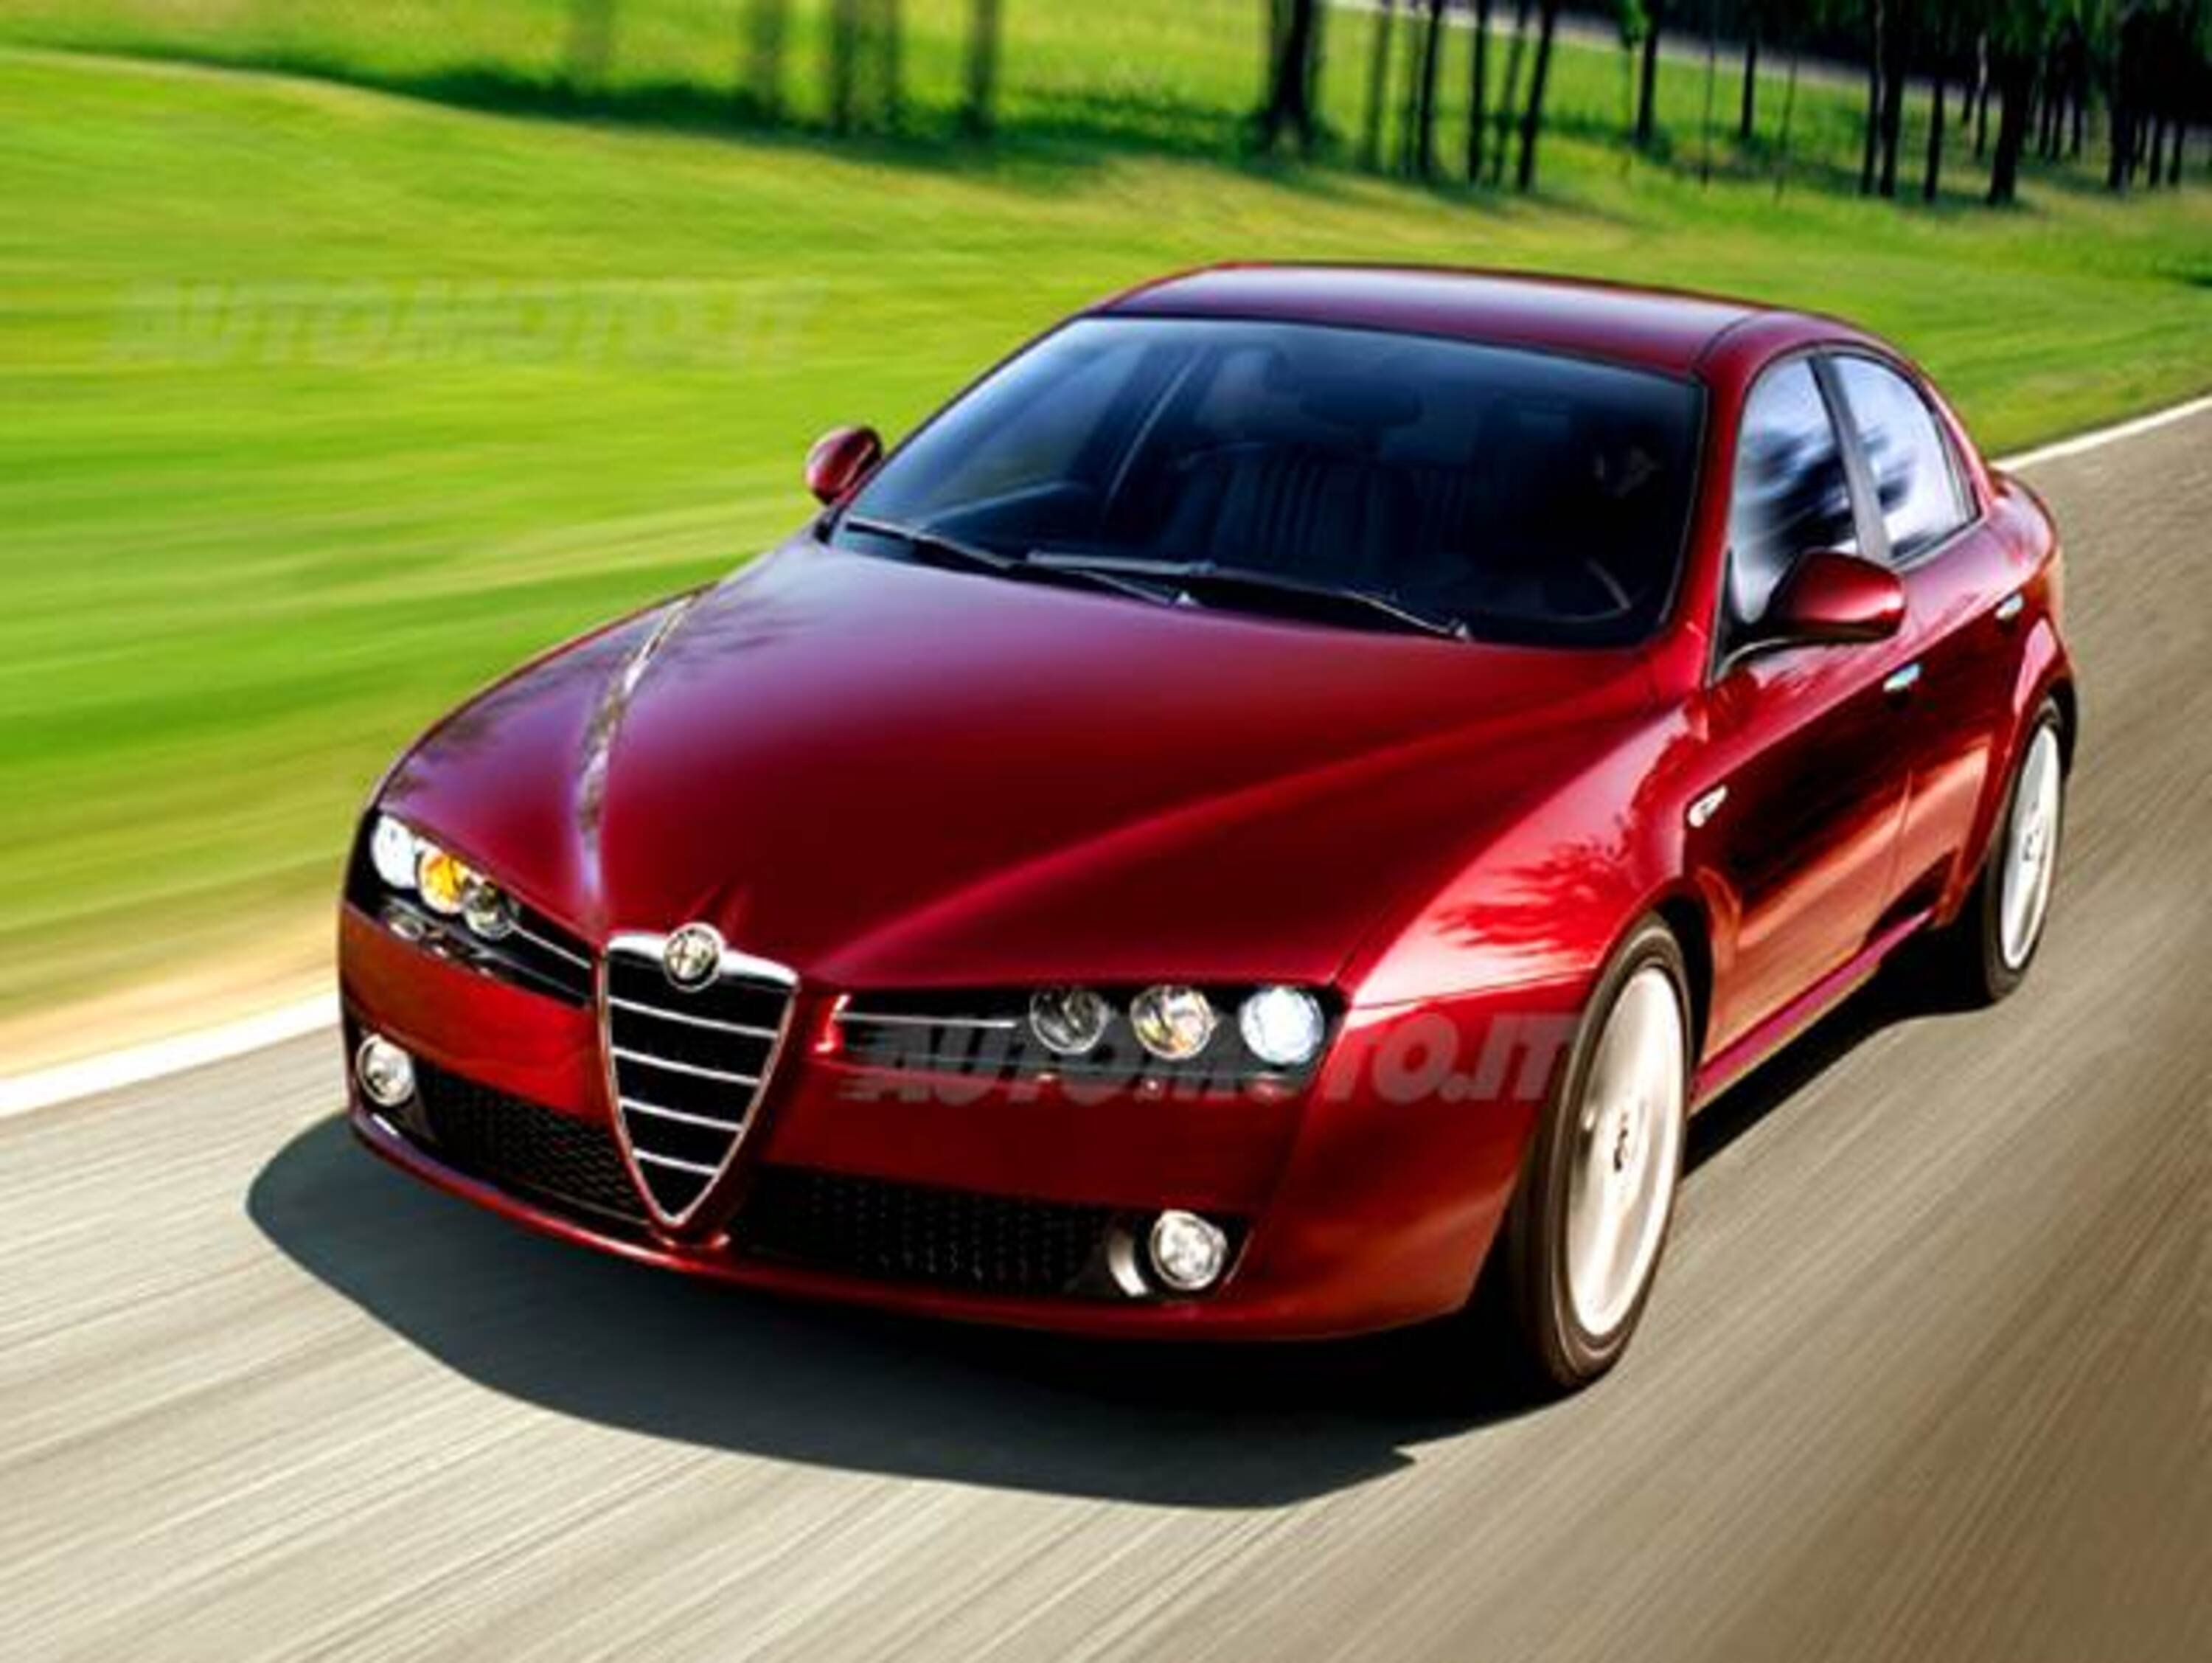 Alfa Romeo 159 1.9 JTDm Distinctive 